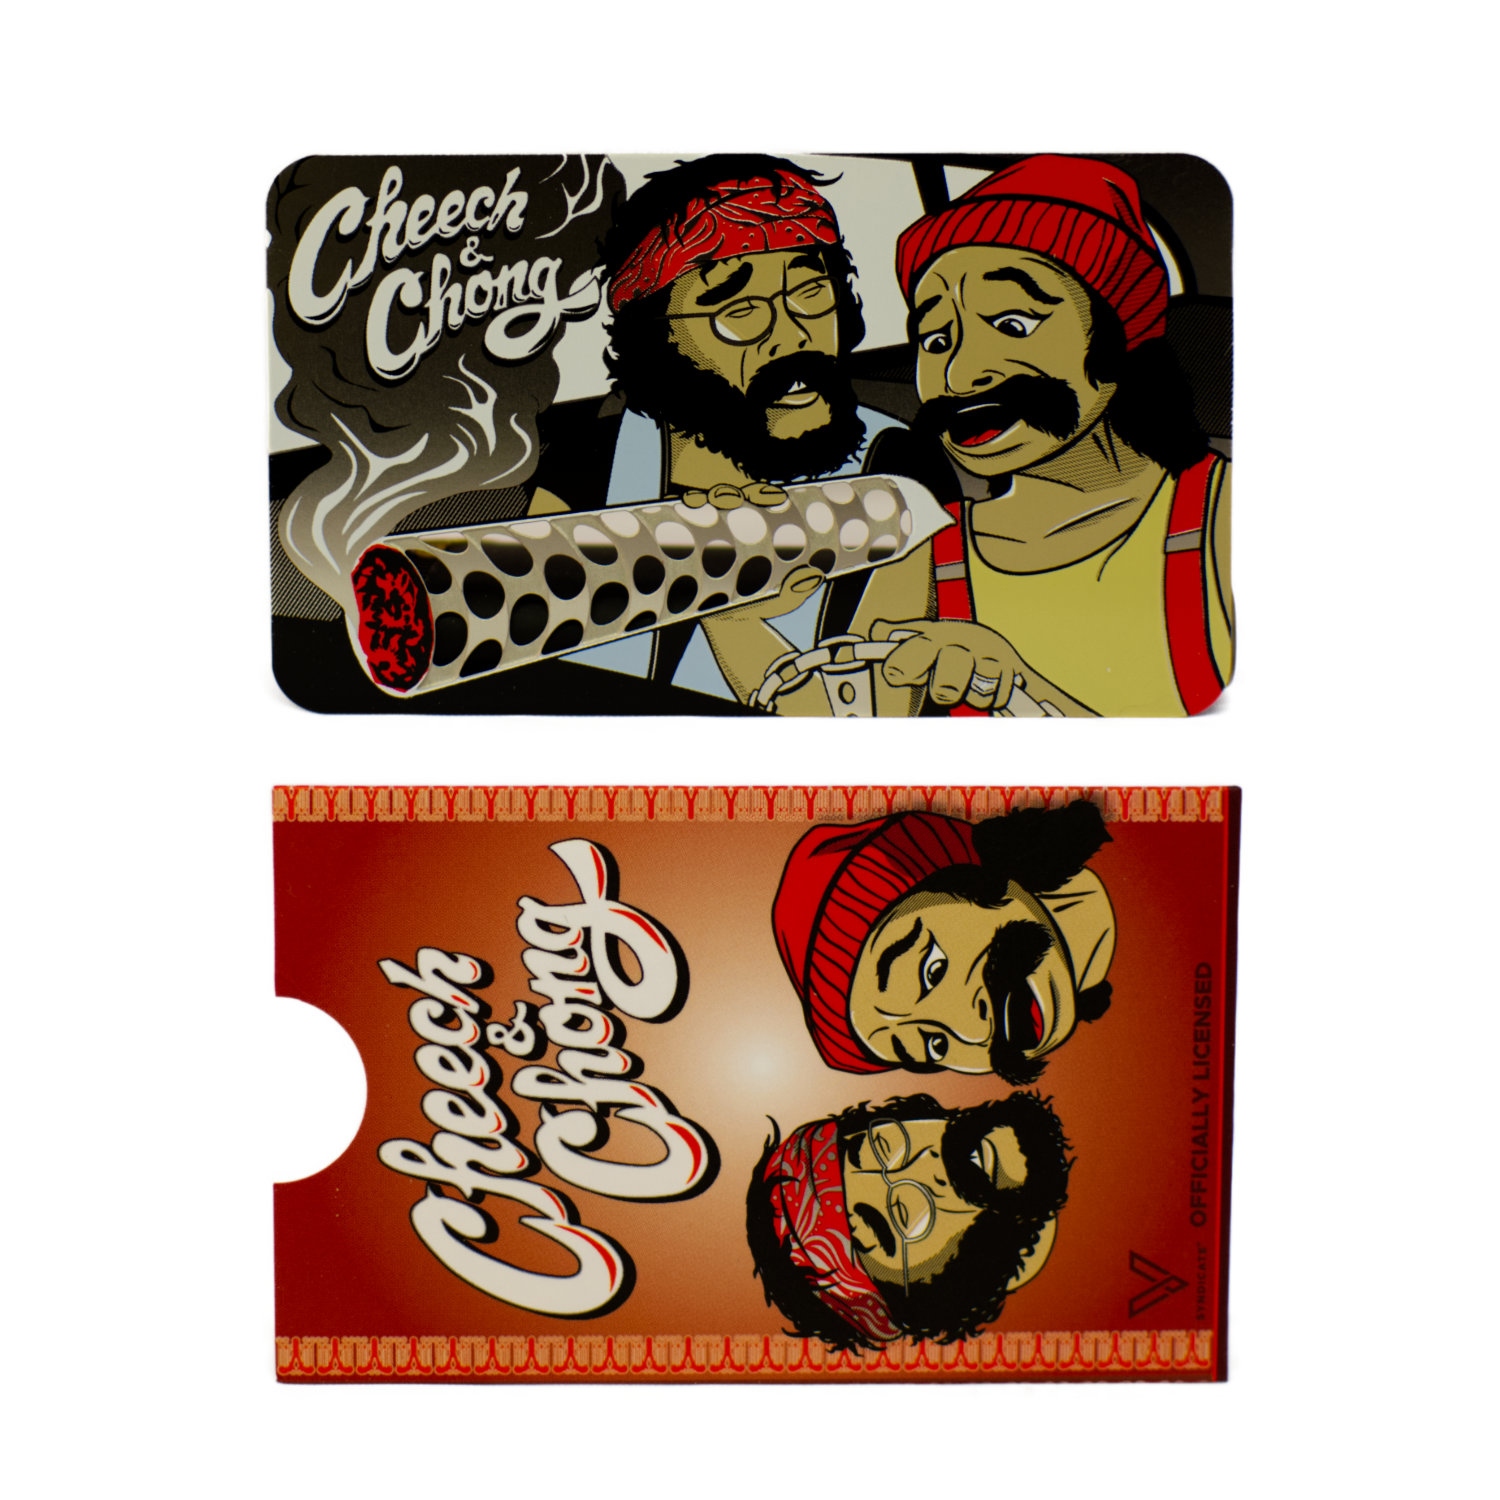 Grinder card “Cheech & Chong”